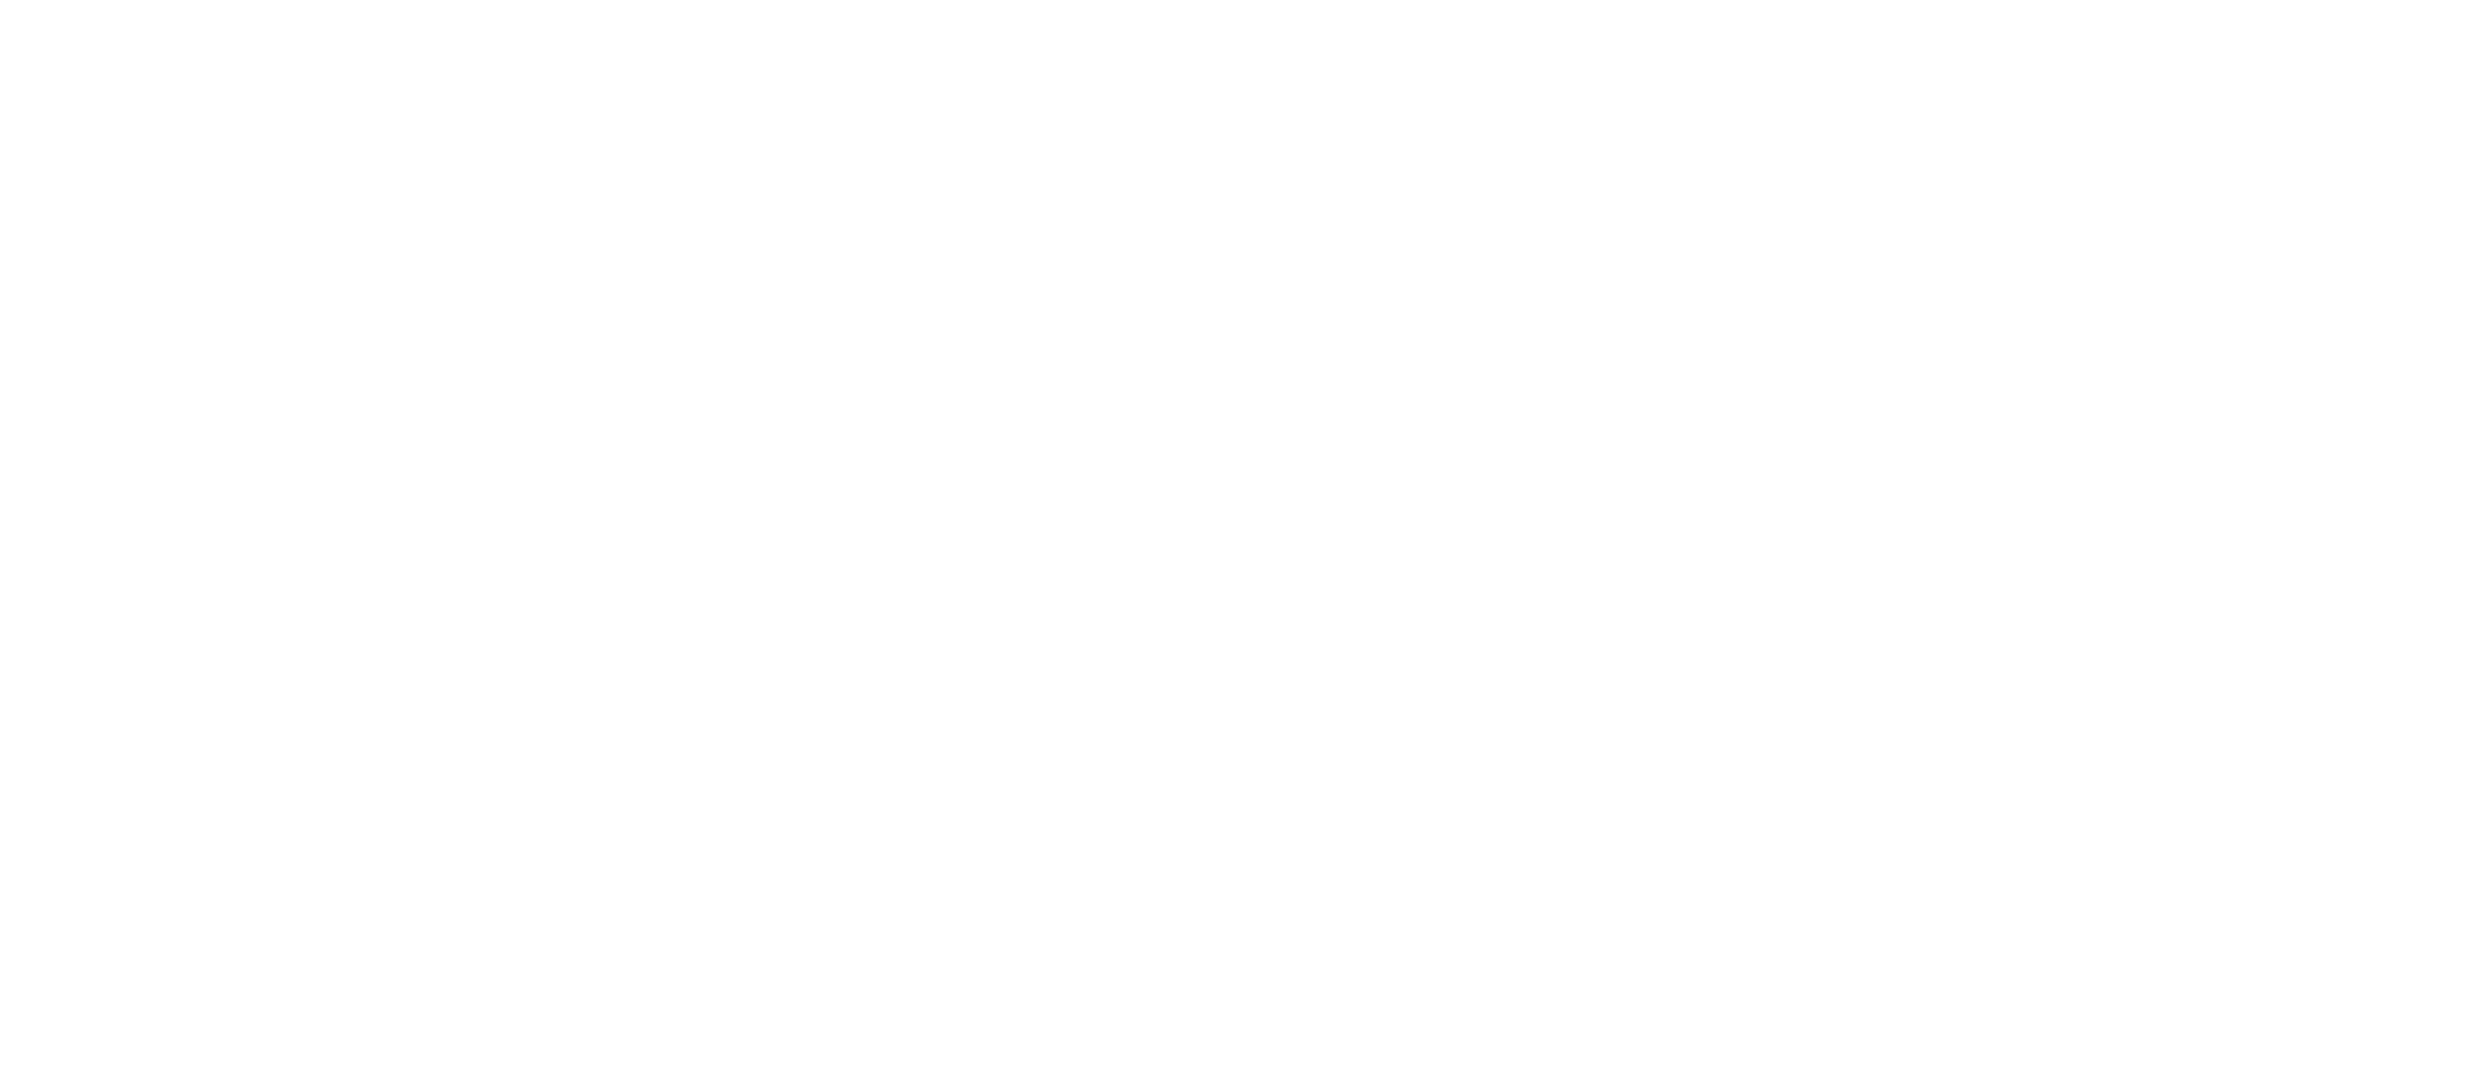 jealue art and design logo white